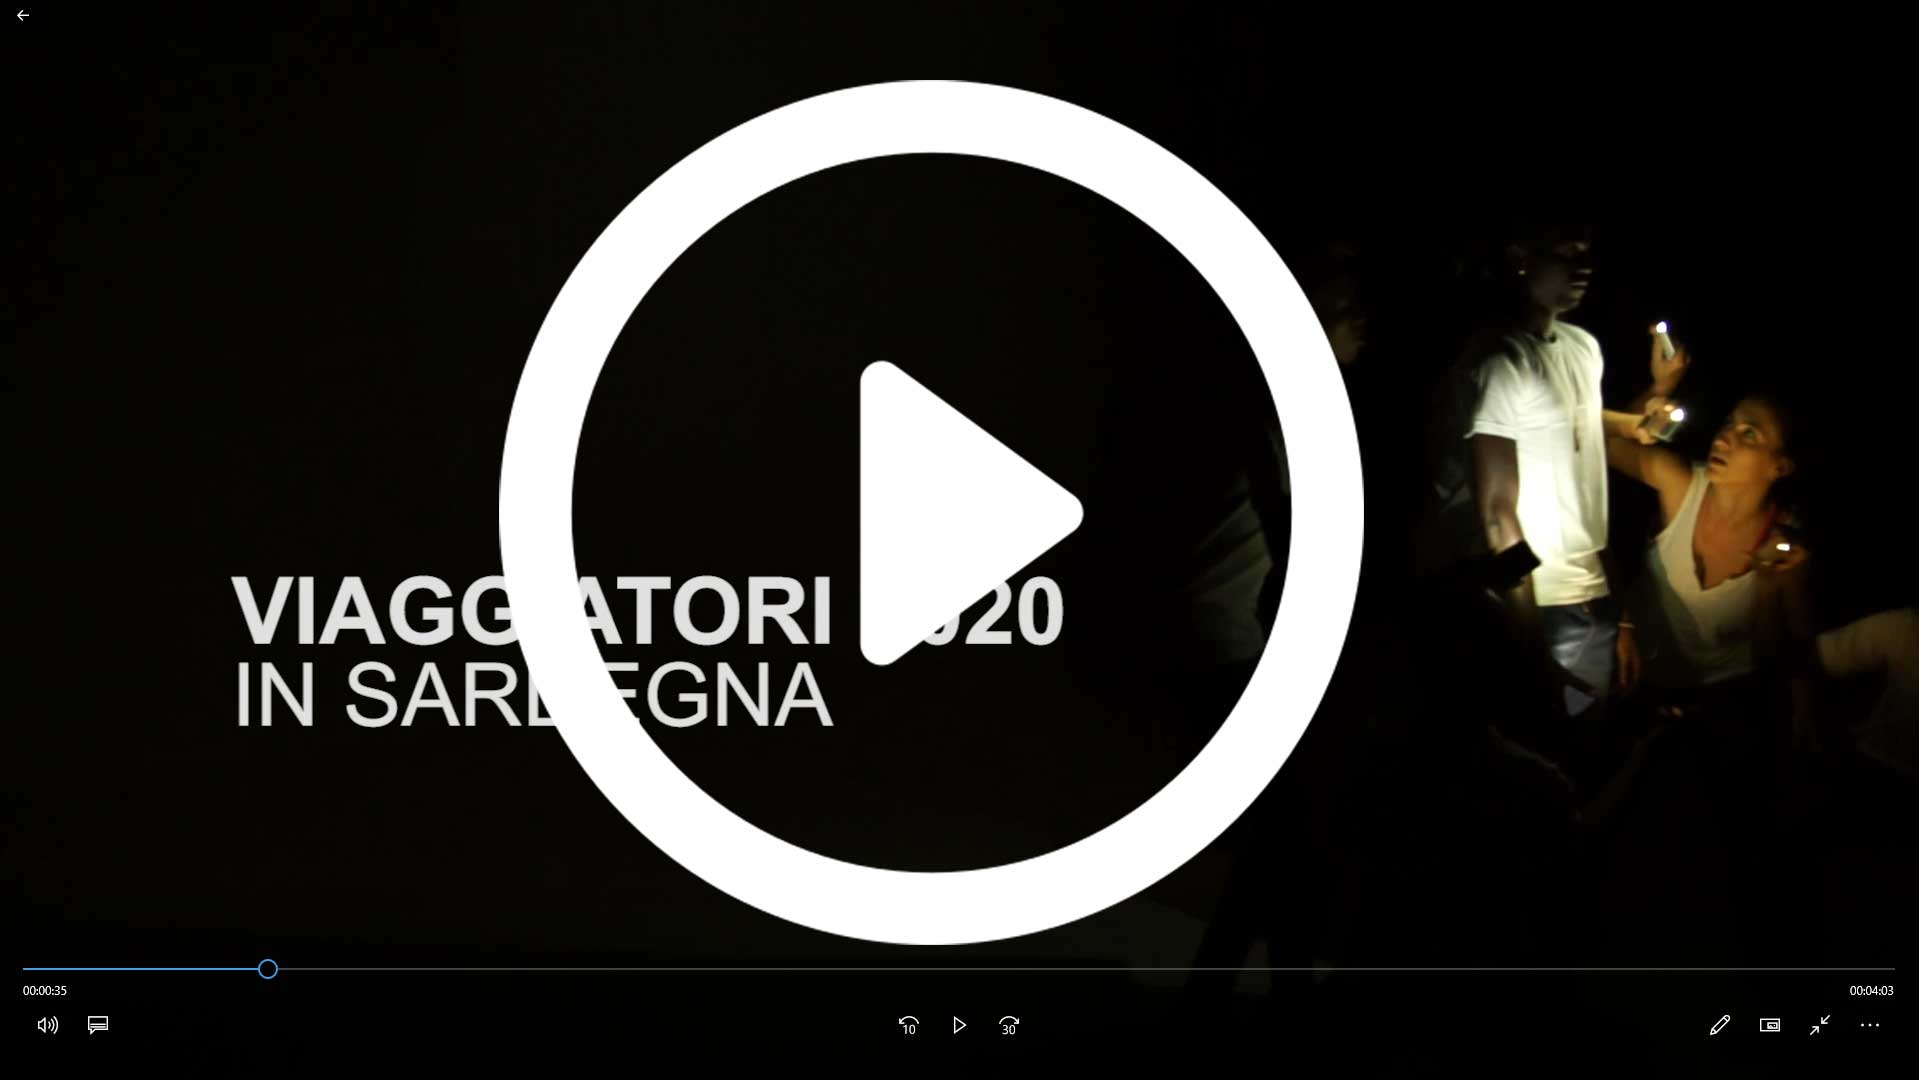 Video Viaggiatori 2020 in Sardegna